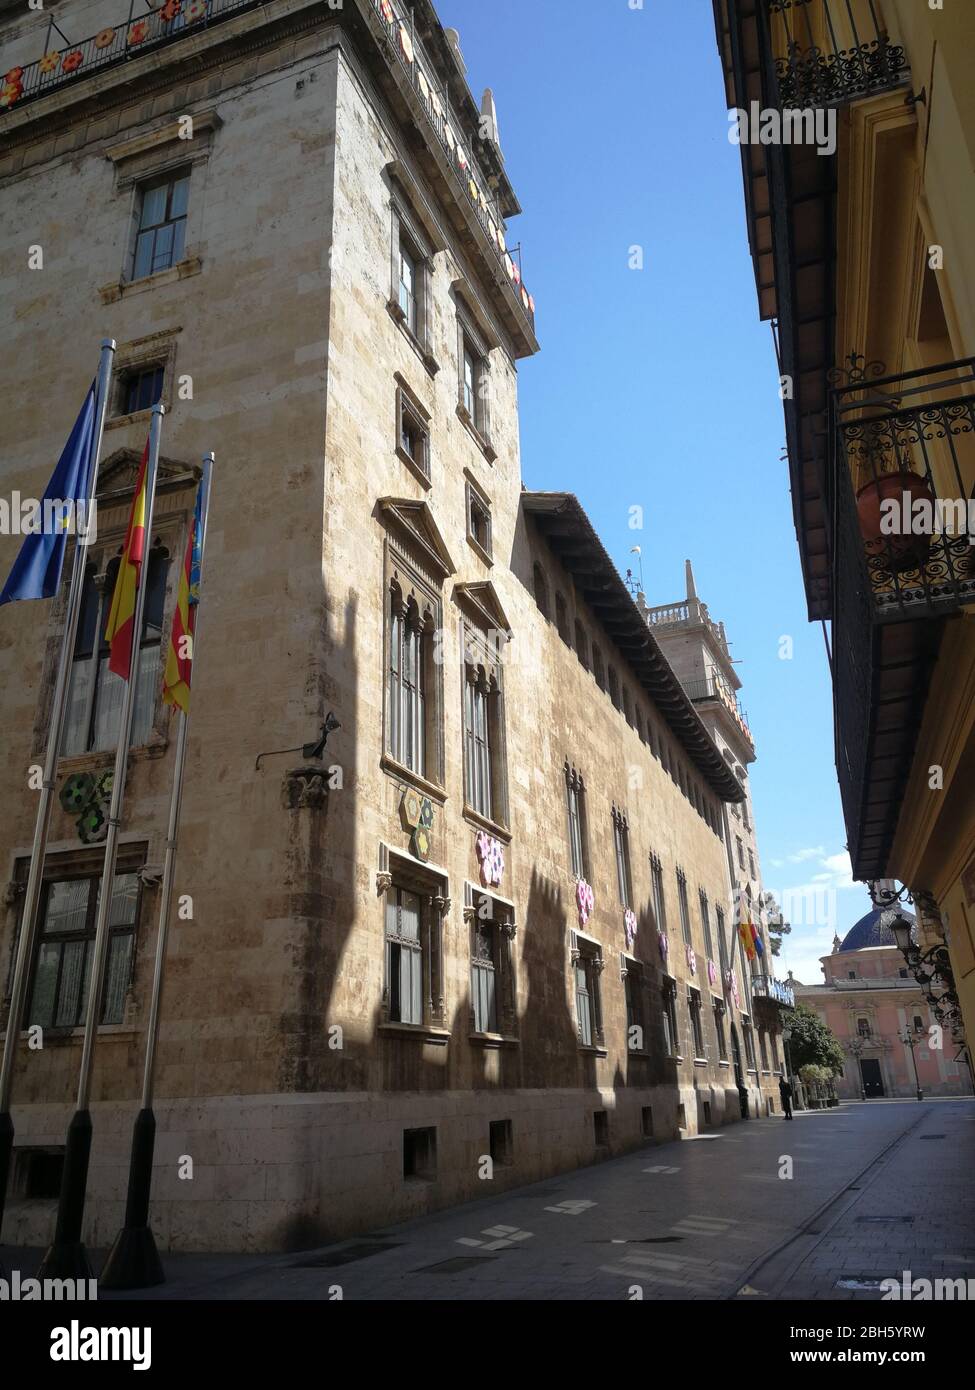 Empty streets of the city center of Valencia, Spain due to coronavirus lockdown Stock Photo